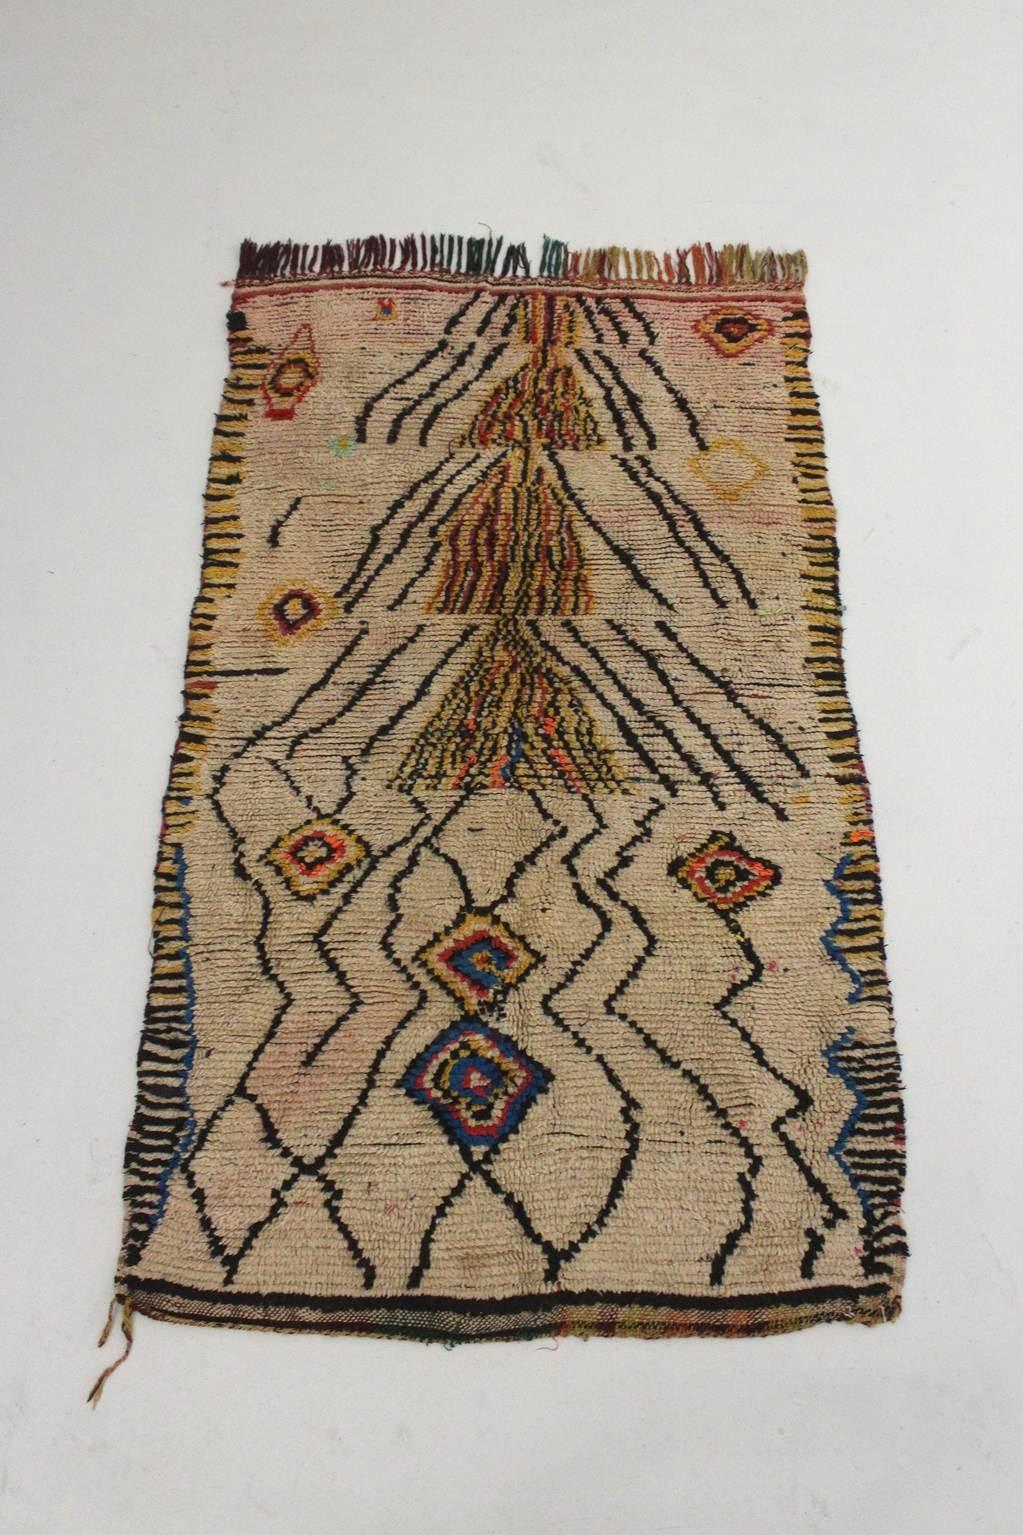 Ich bin so froh, dass ich diesen schönen Teppich in die Auswahl bringen kann! Sie stammt aus dem Gebiet von Aït Bouguemez, Azilal, Marokko. Es ist ein echter Azilal-Teppich mit Altersspuren, aber ich liebe die ganze Komposition so sehr, dass ich ihn